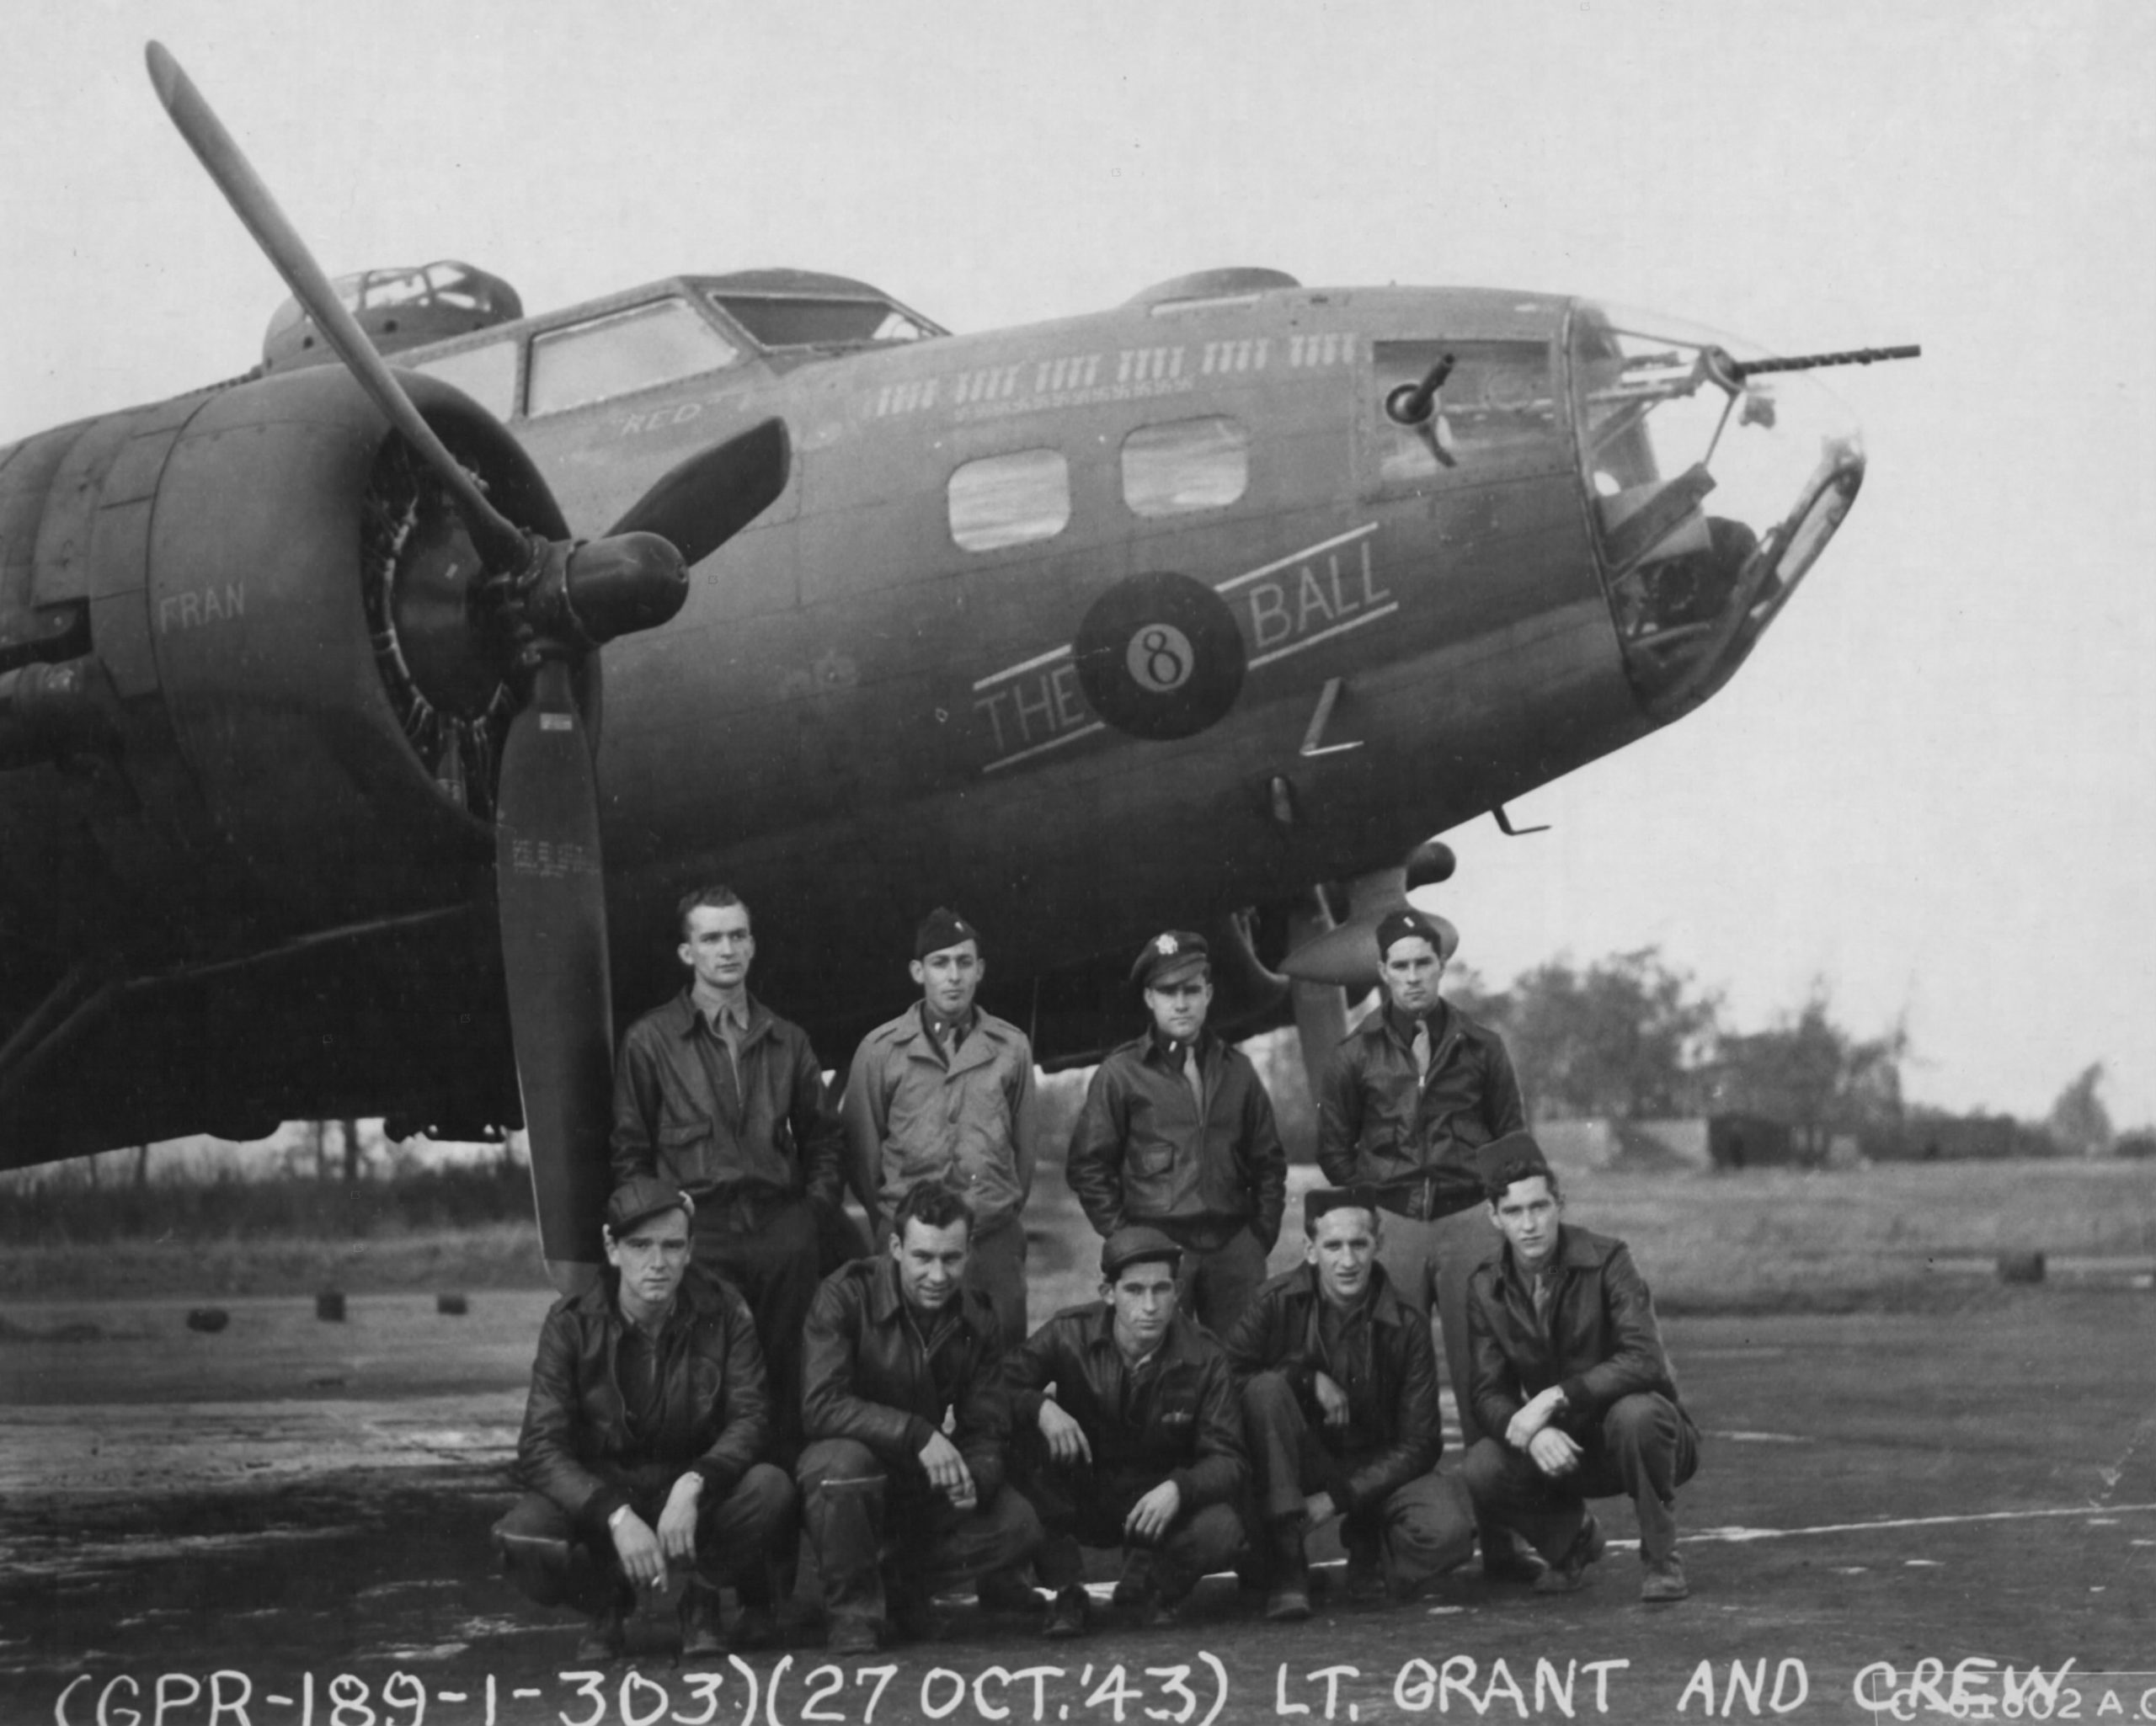 B-17 #41-24635 / The ‘8’ Ball Mk II